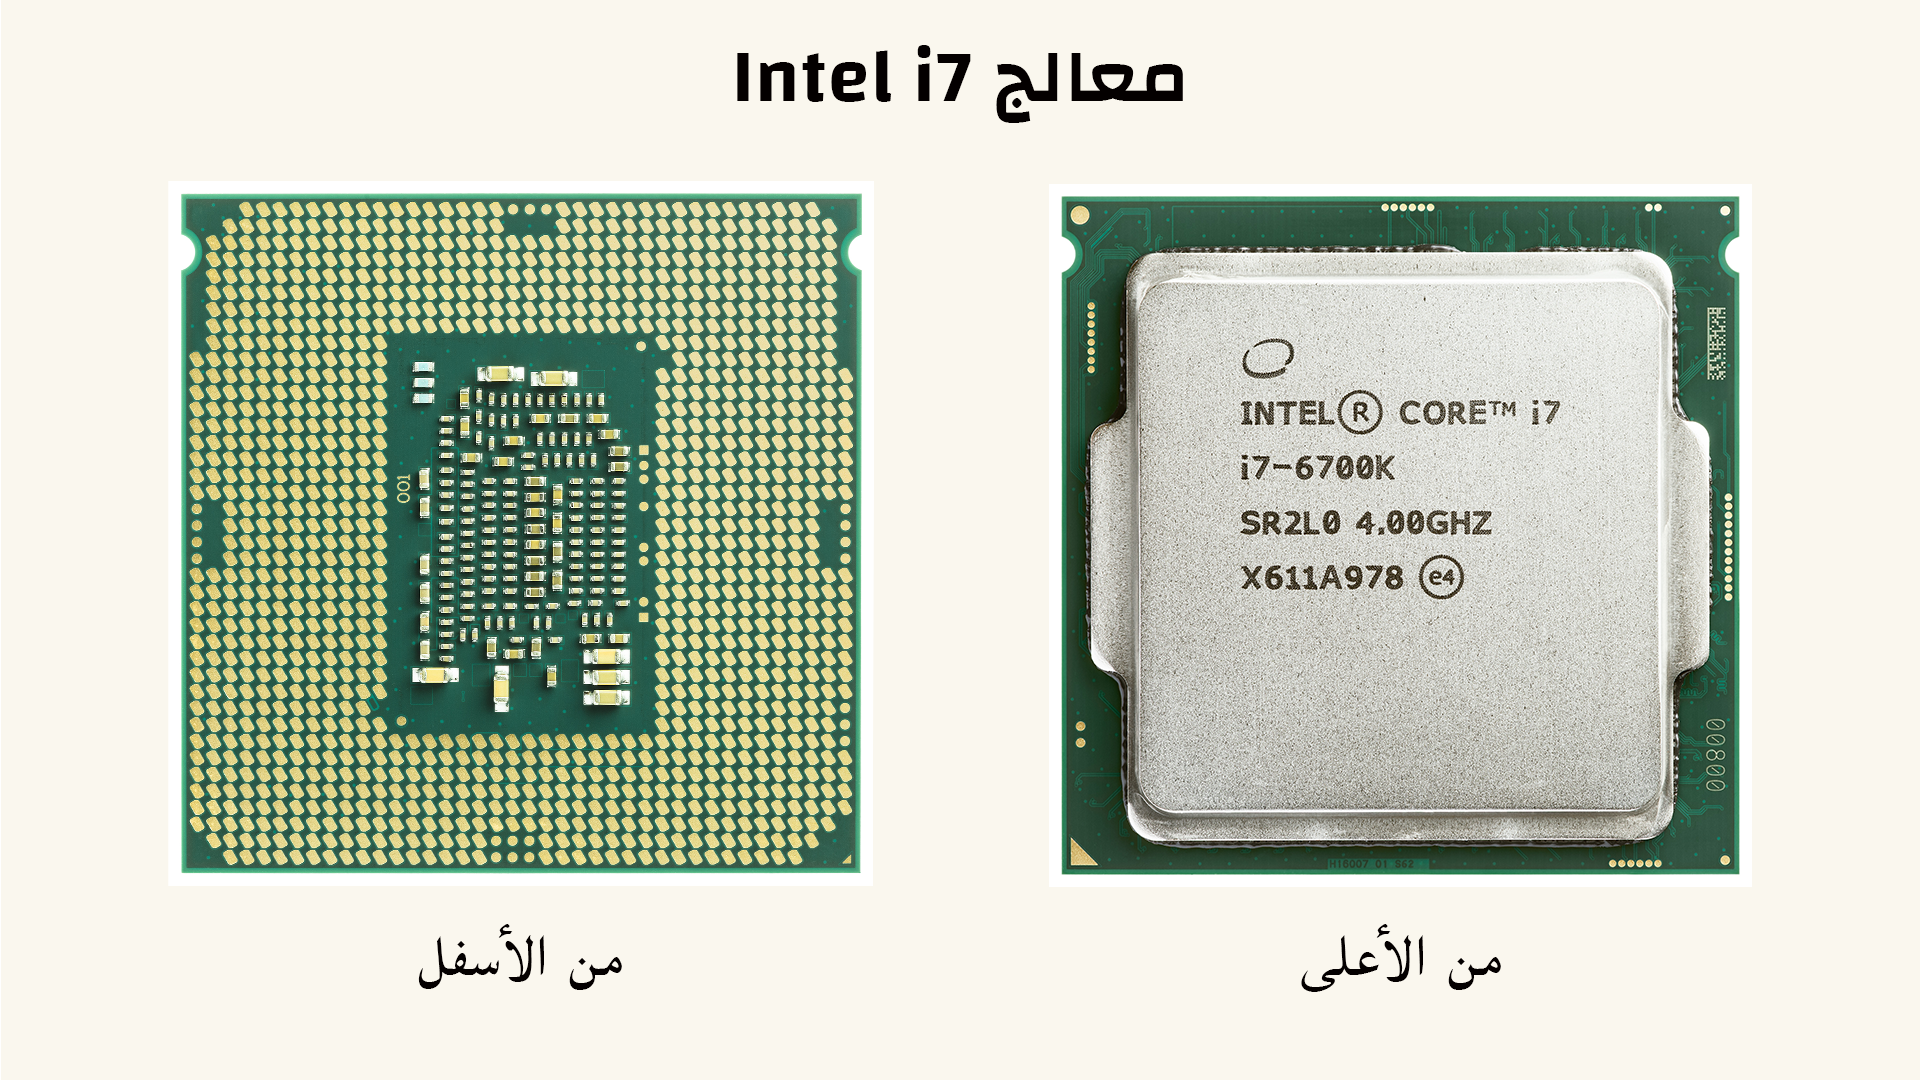 صور معالج Intel i7 من الأعلى والأسفل